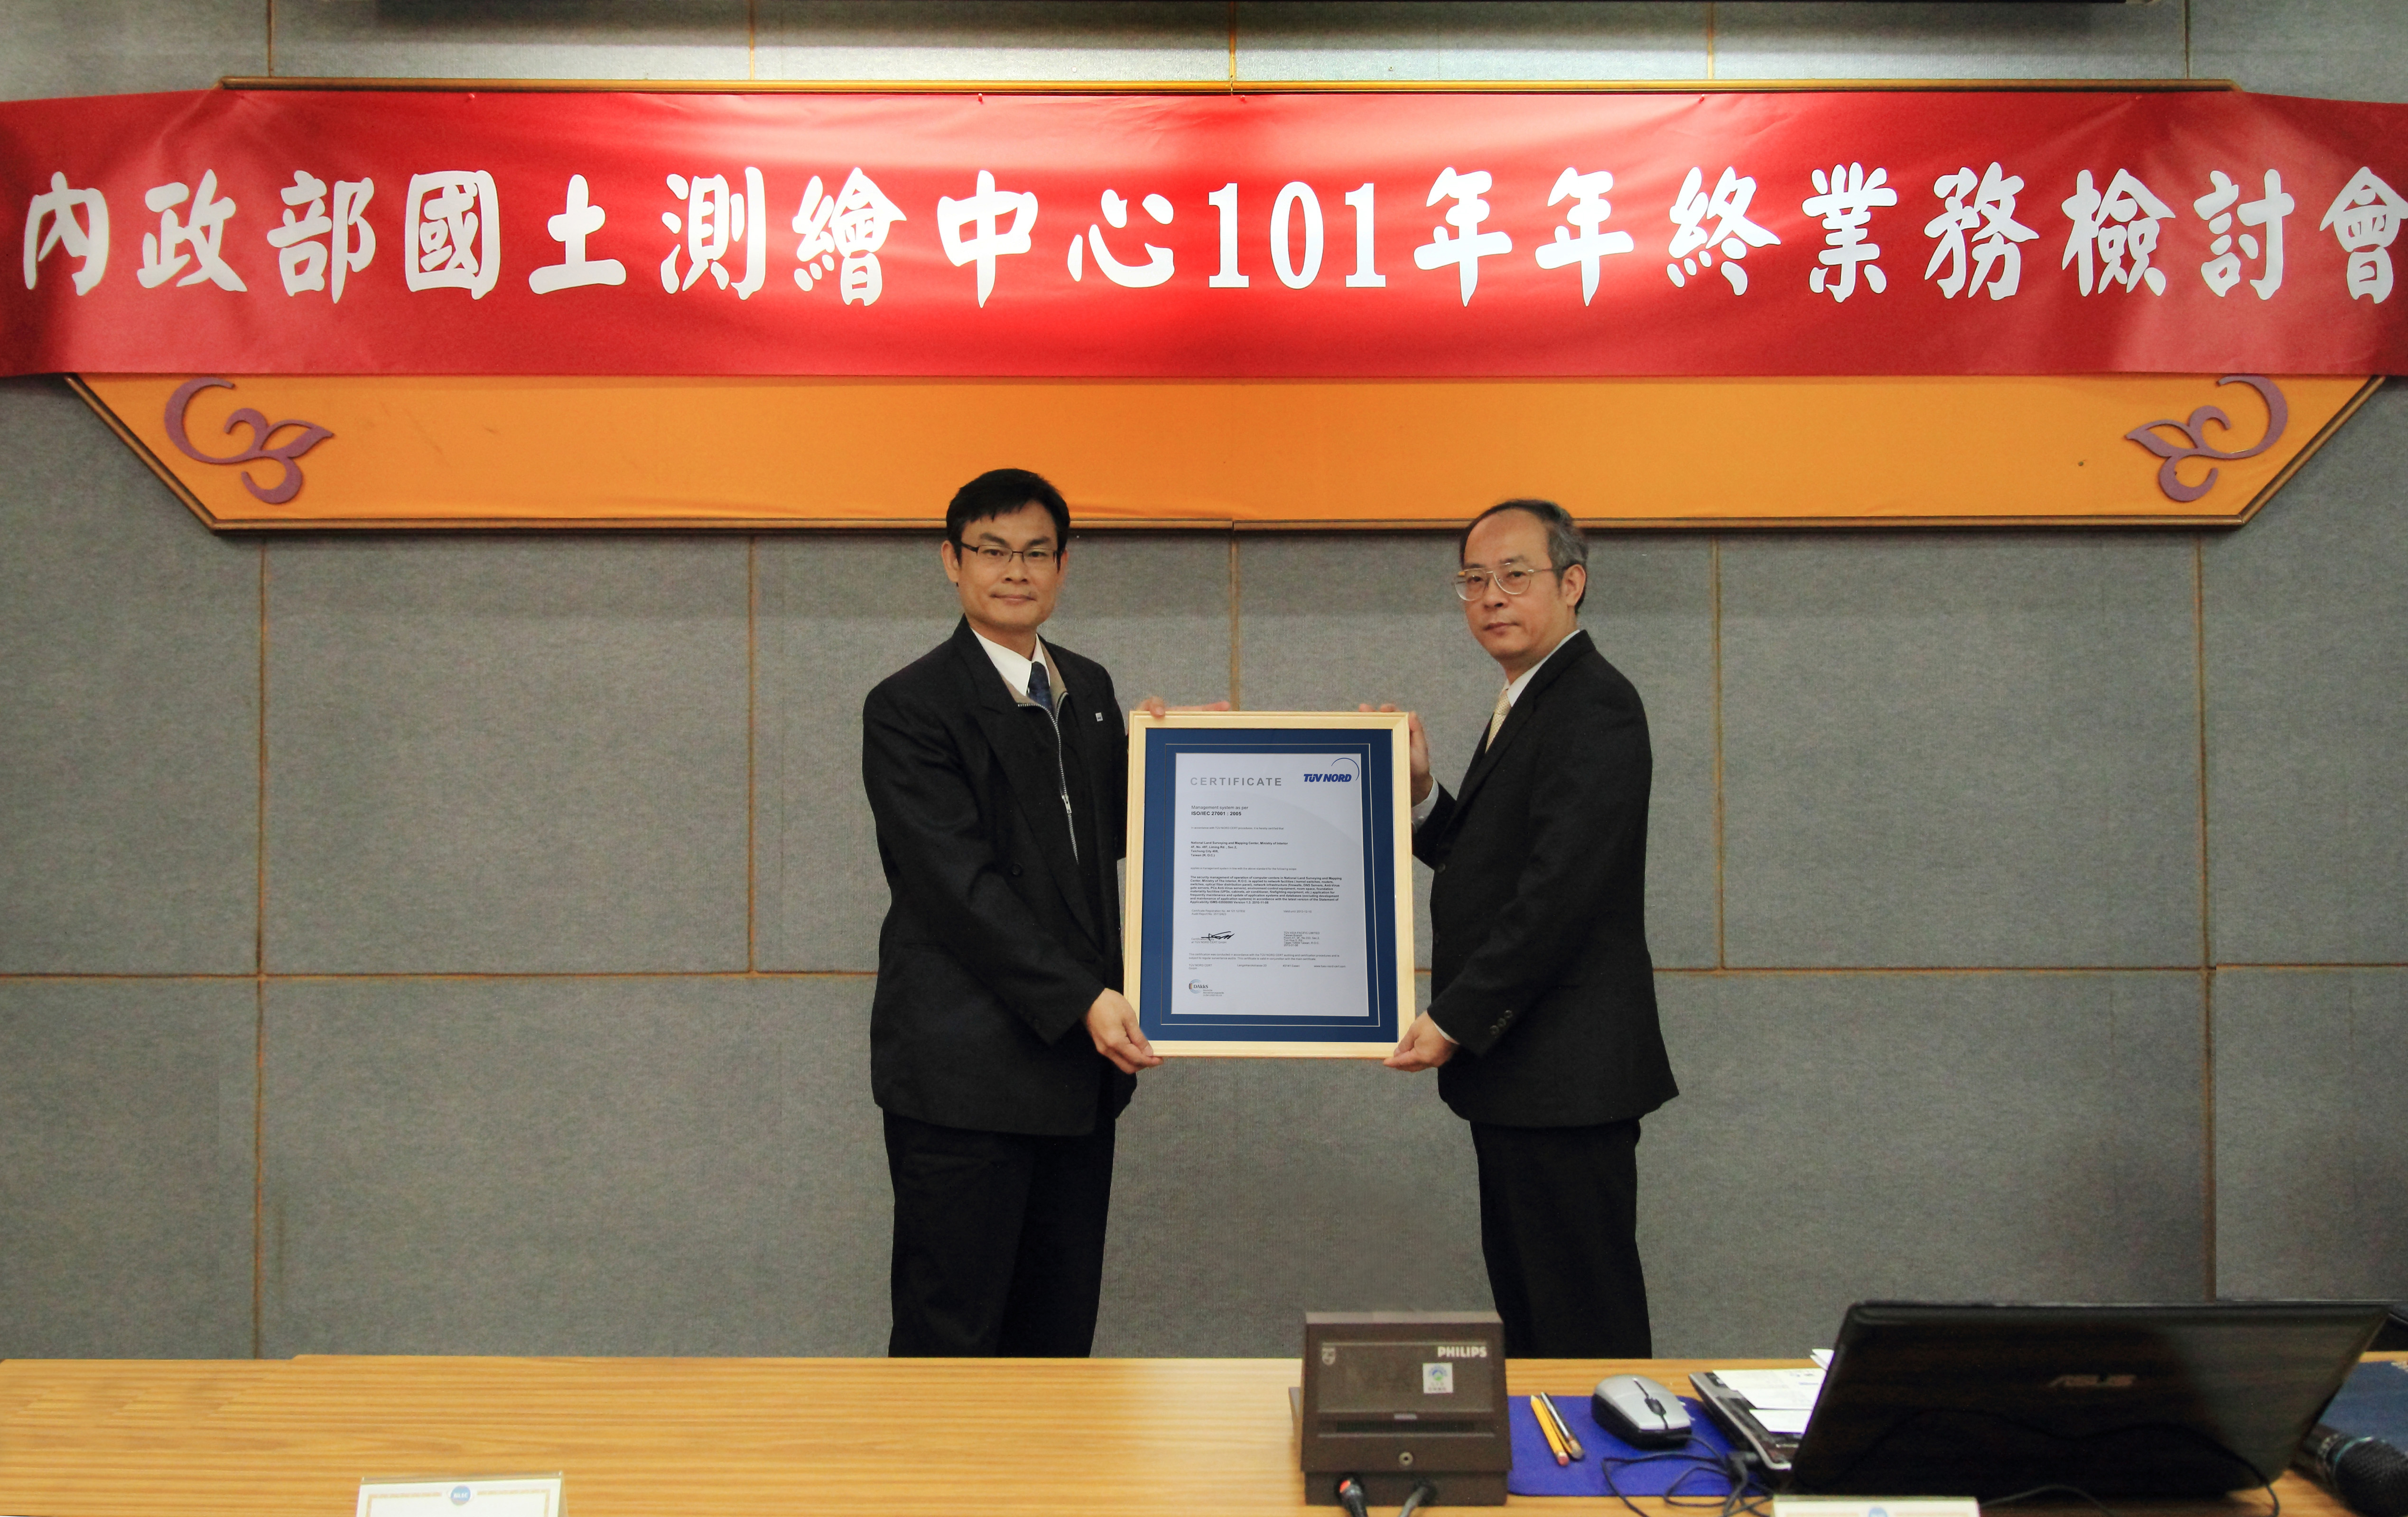 ISO 27001頒證，由香港商漢德技術監督服務亞太有限公司臺灣分公司(TÜV)李治權協理代表頒證，本中心劉主任正倫代表受證。